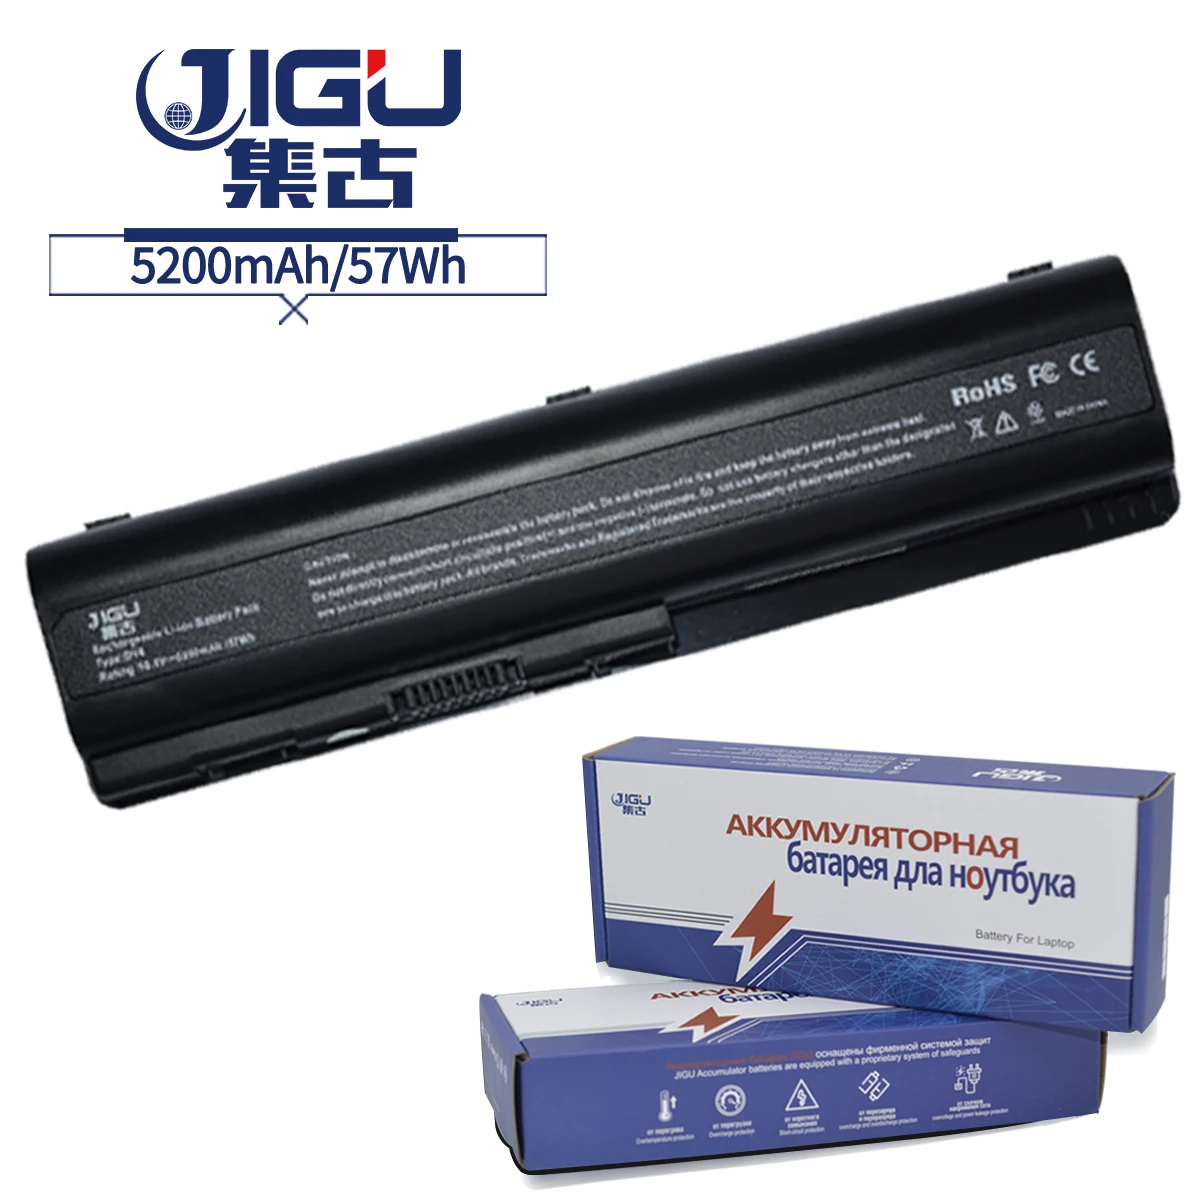 JIGU Notebook Batérie Pre HP Pavilion DV6 DV6-1100 DV6-2100 DV6t DV6t-1000 DV6t-2000 DV6z DV6z-1000 DV6z-2000 G60-230us 6CELLS